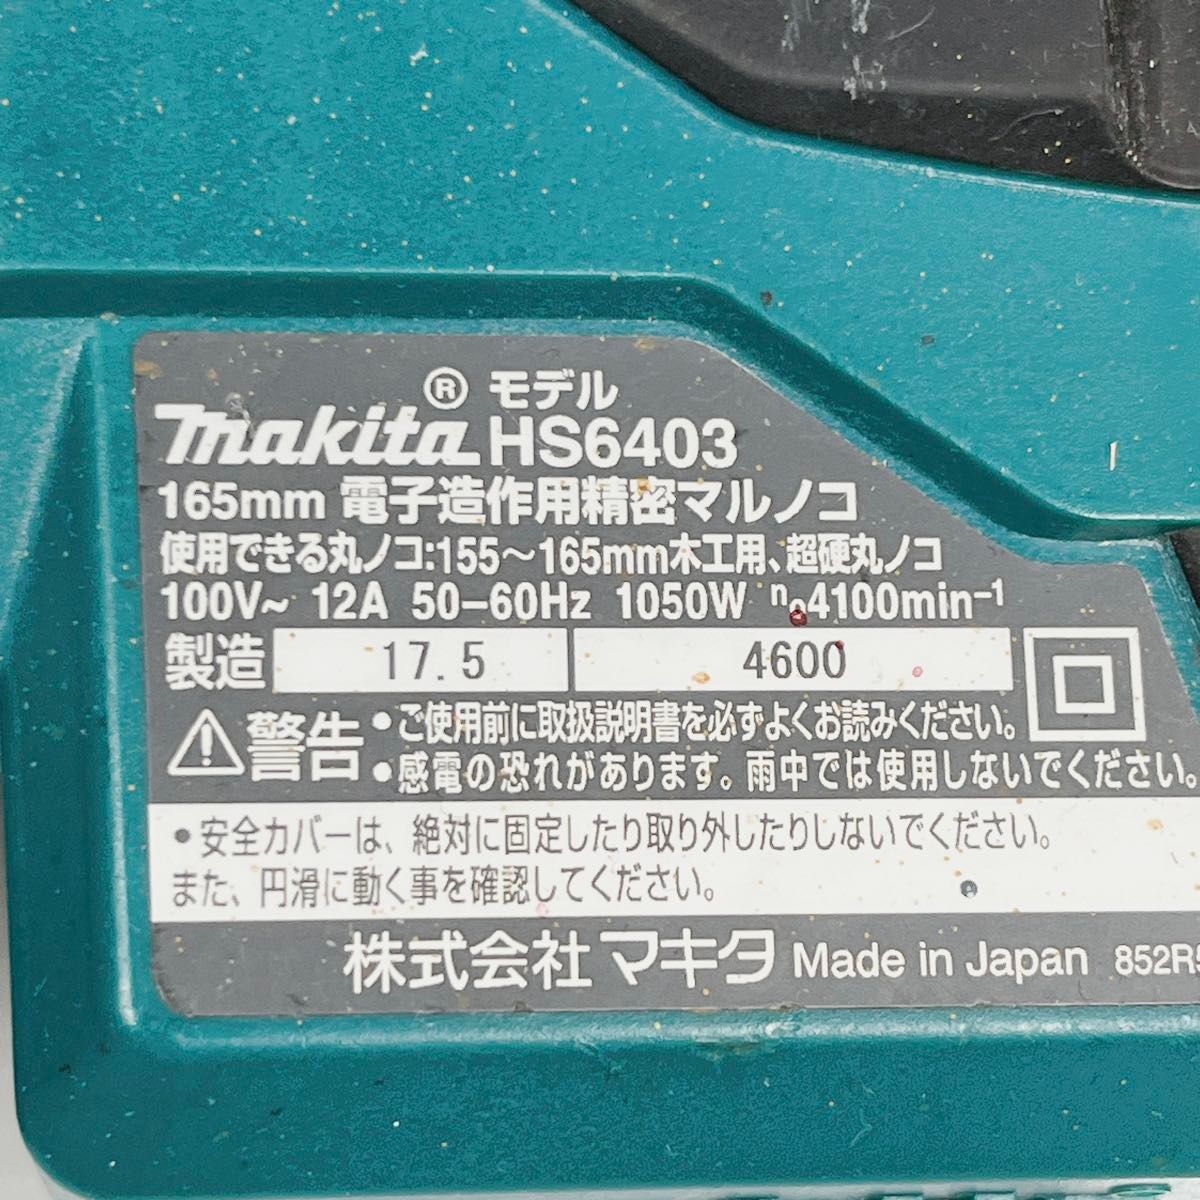 MAKITA マキタ 165mm 電子造作用精密マルノコ HS6403